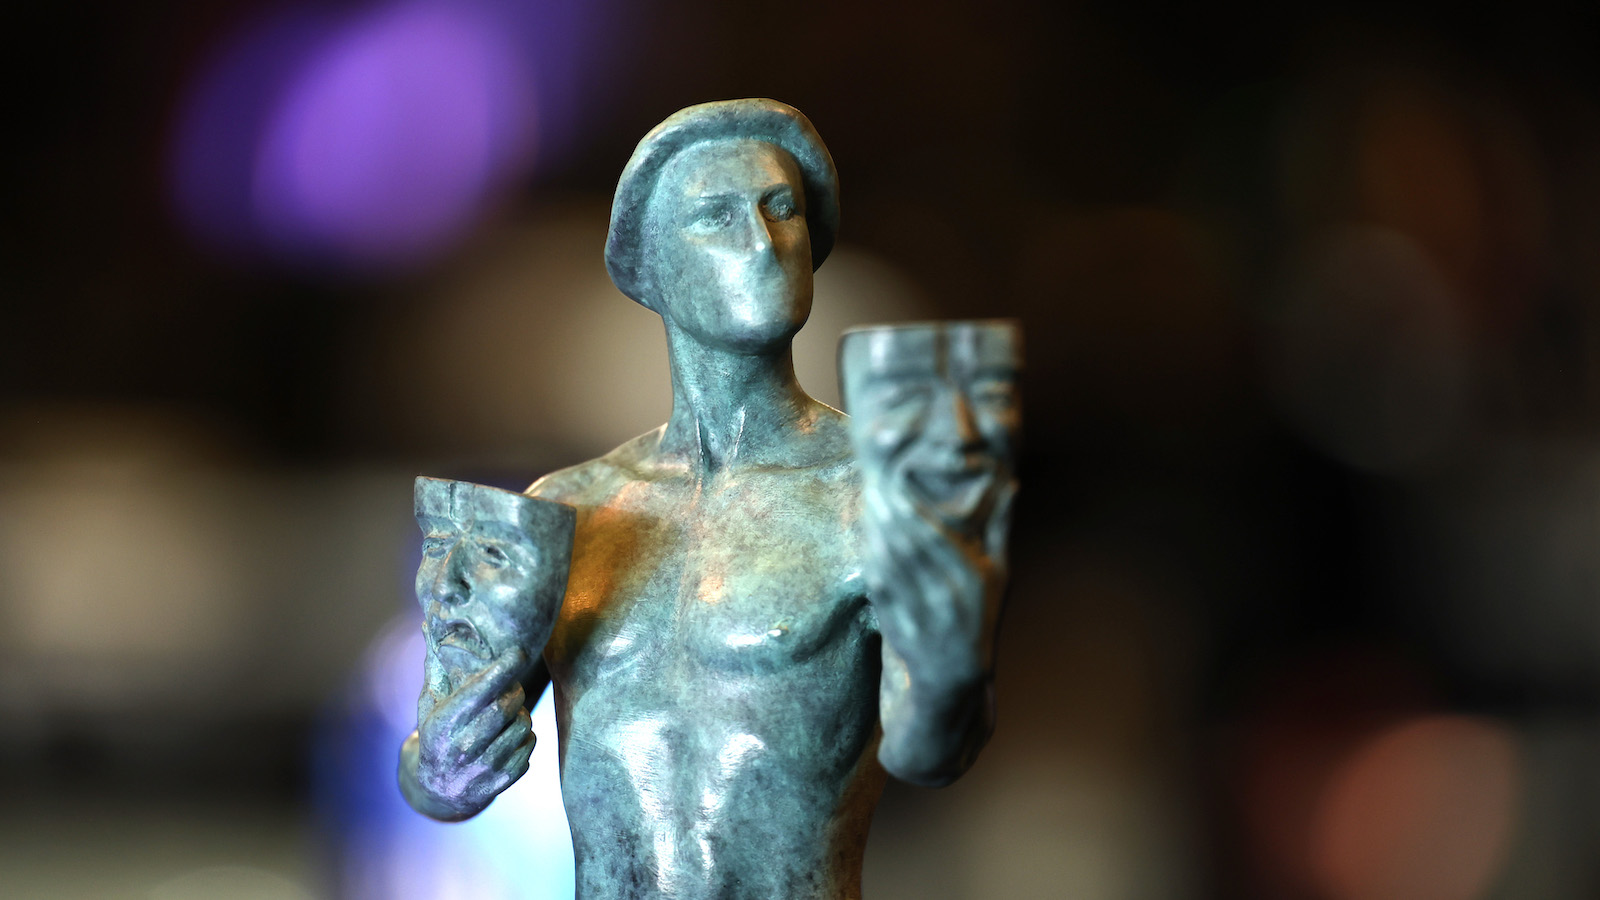 Screen Actors Guild Award